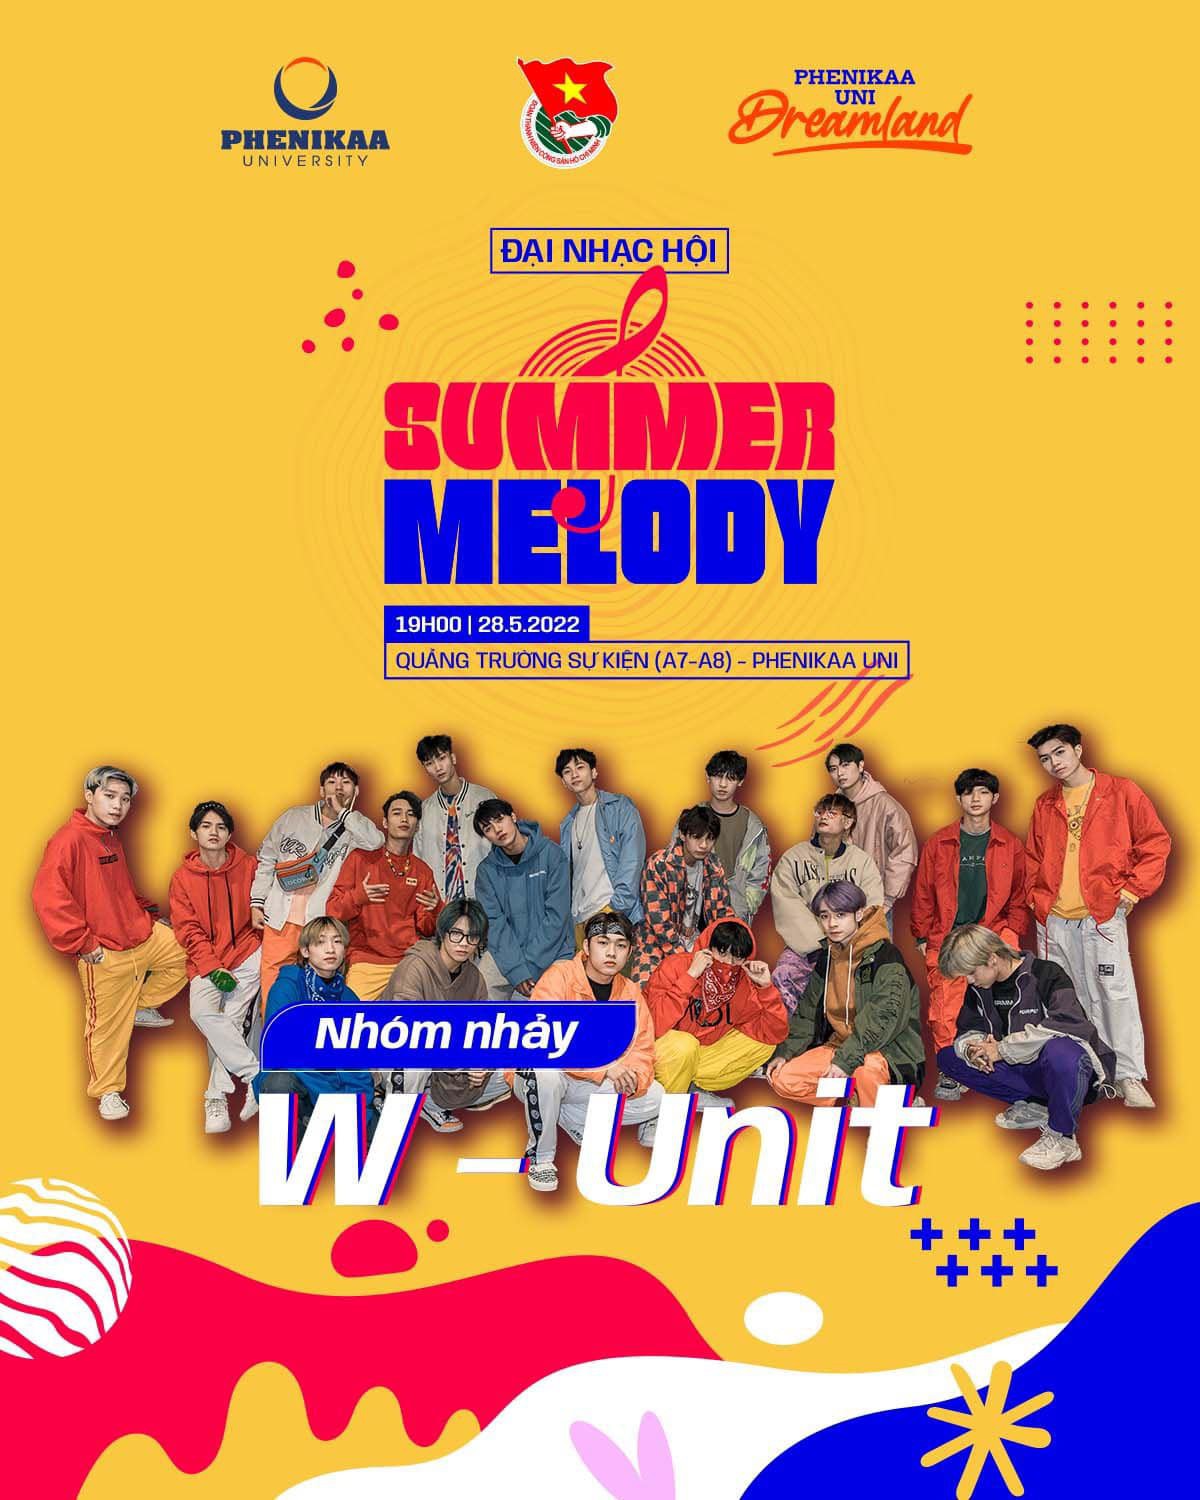 Đại nhạc hội Summer Melody 2022 - Trúc Nhân - Hieuthuhai - Rtee - Only5 Band - Wunit